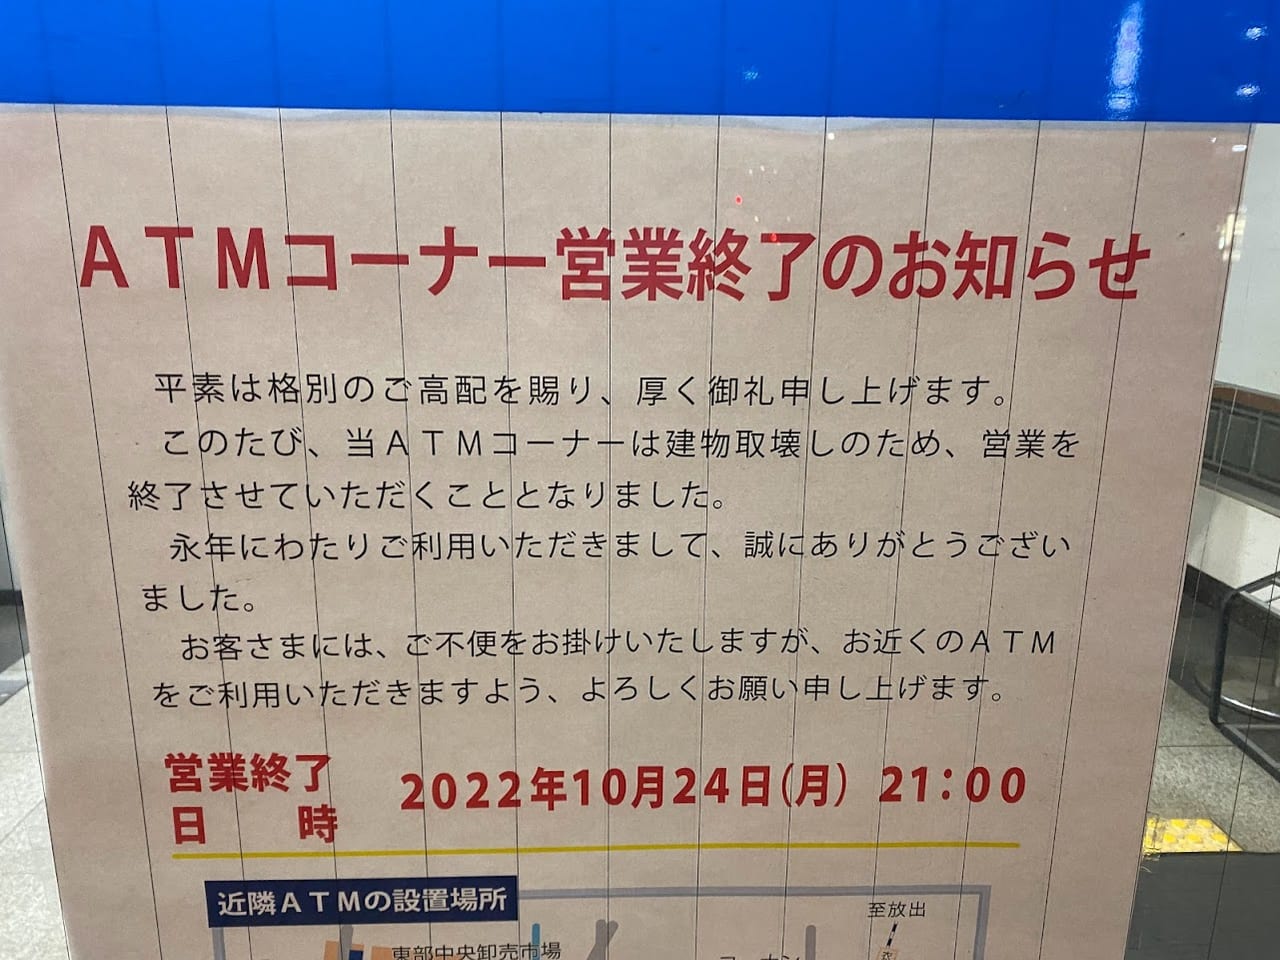 大阪シティ信用金庫平野上町支店ATM営業終了のお知らせ②